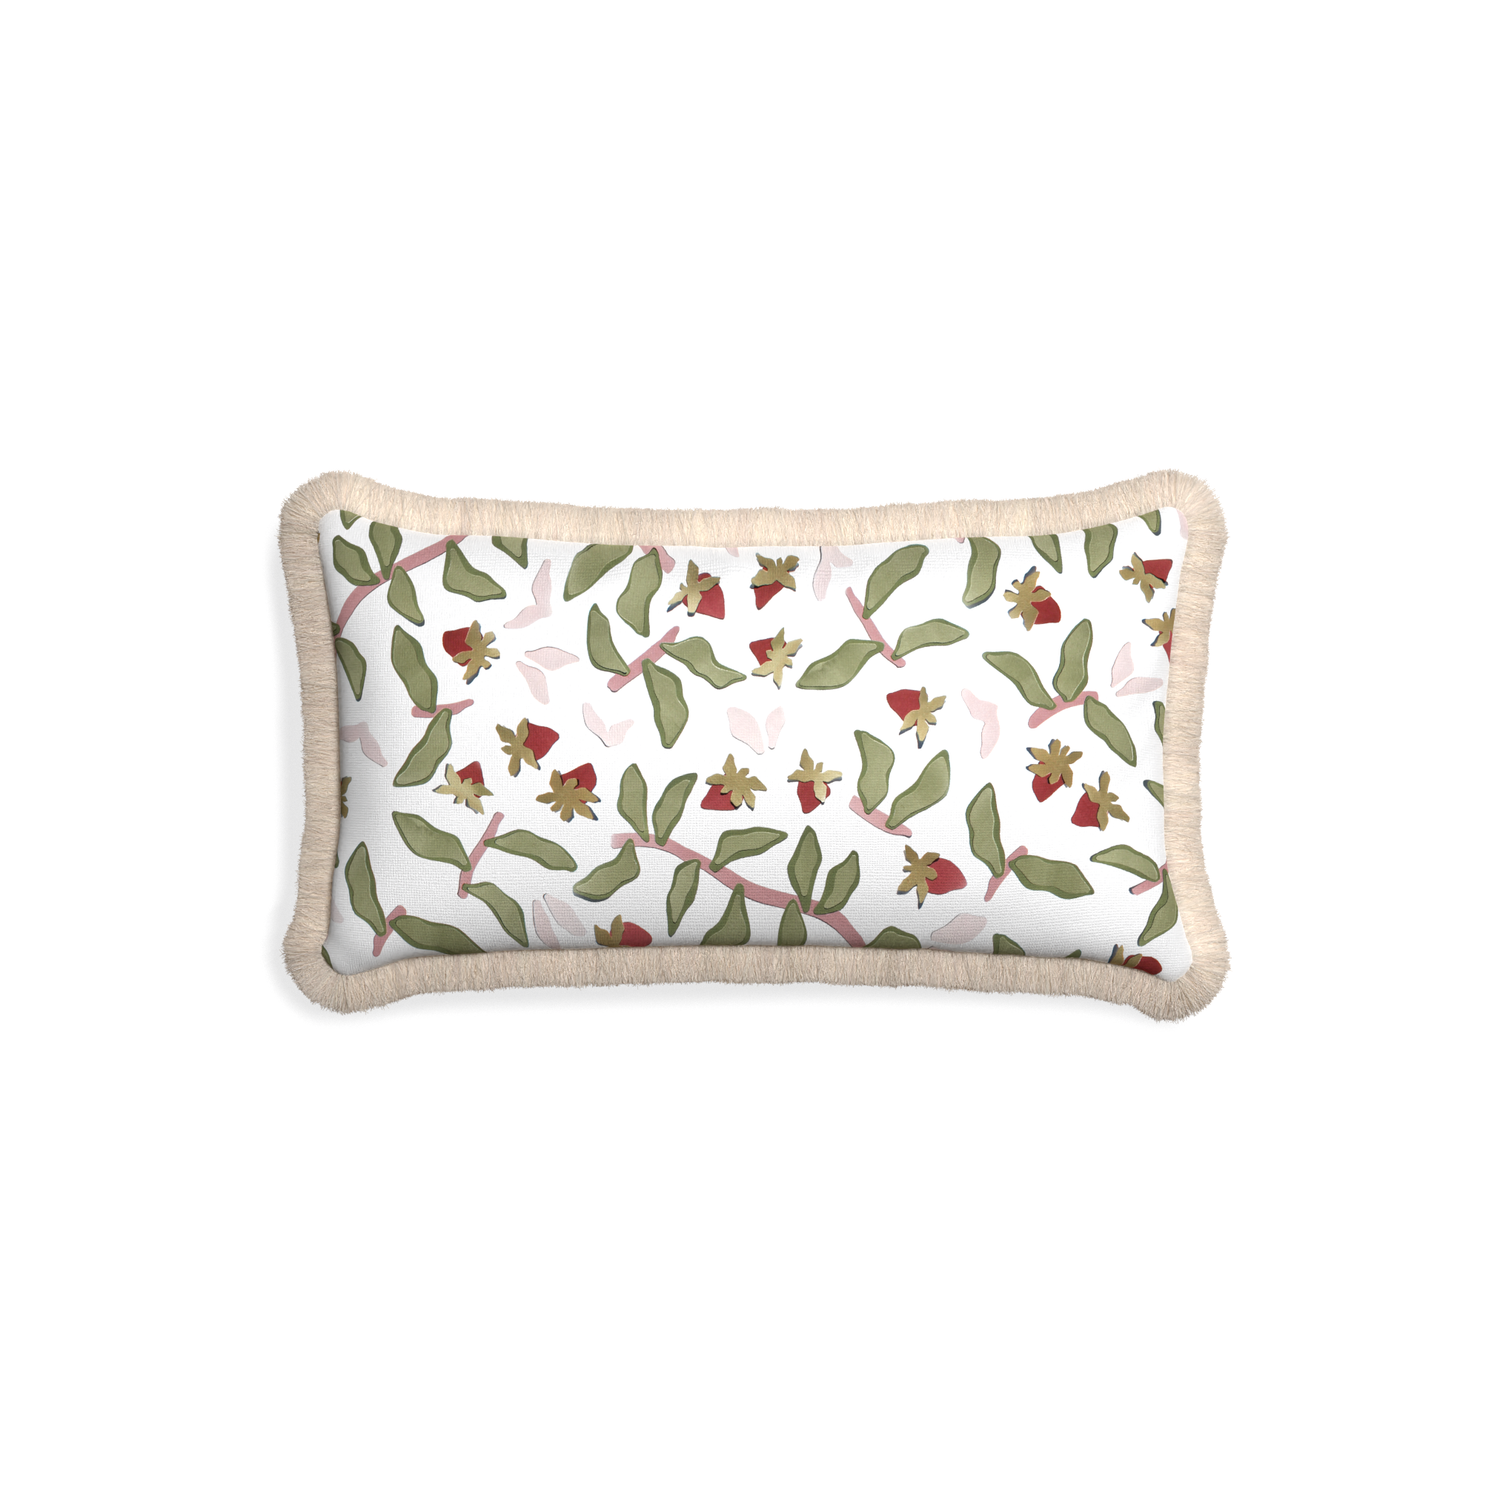 Petite-lumbar nellie custom strawberry & botanicalpillow with cream fringe on white background